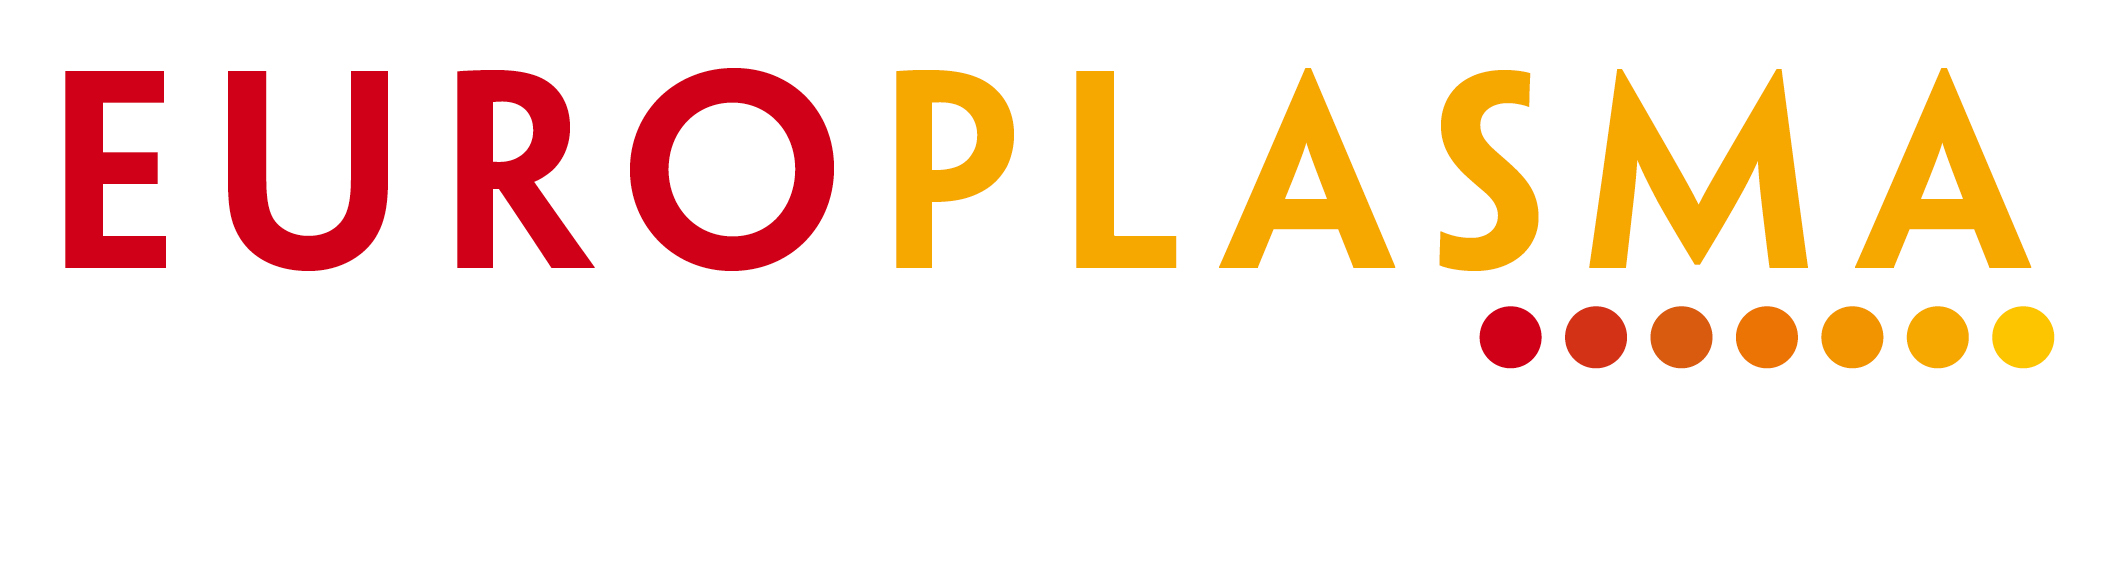 Europlasma Logo 200x55